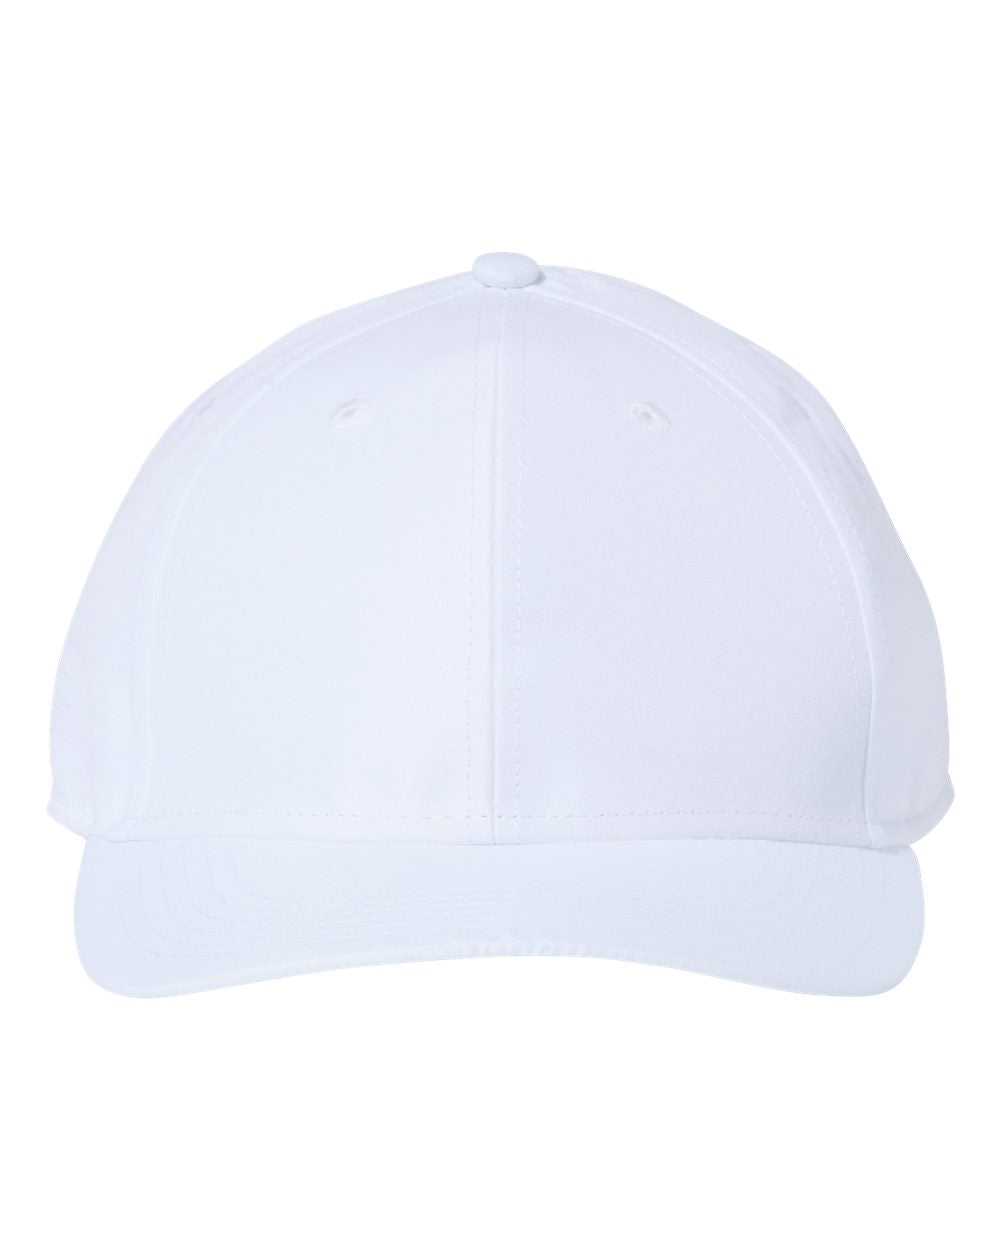 Customizable Atlantis Headwear Recy Feel Cap in white